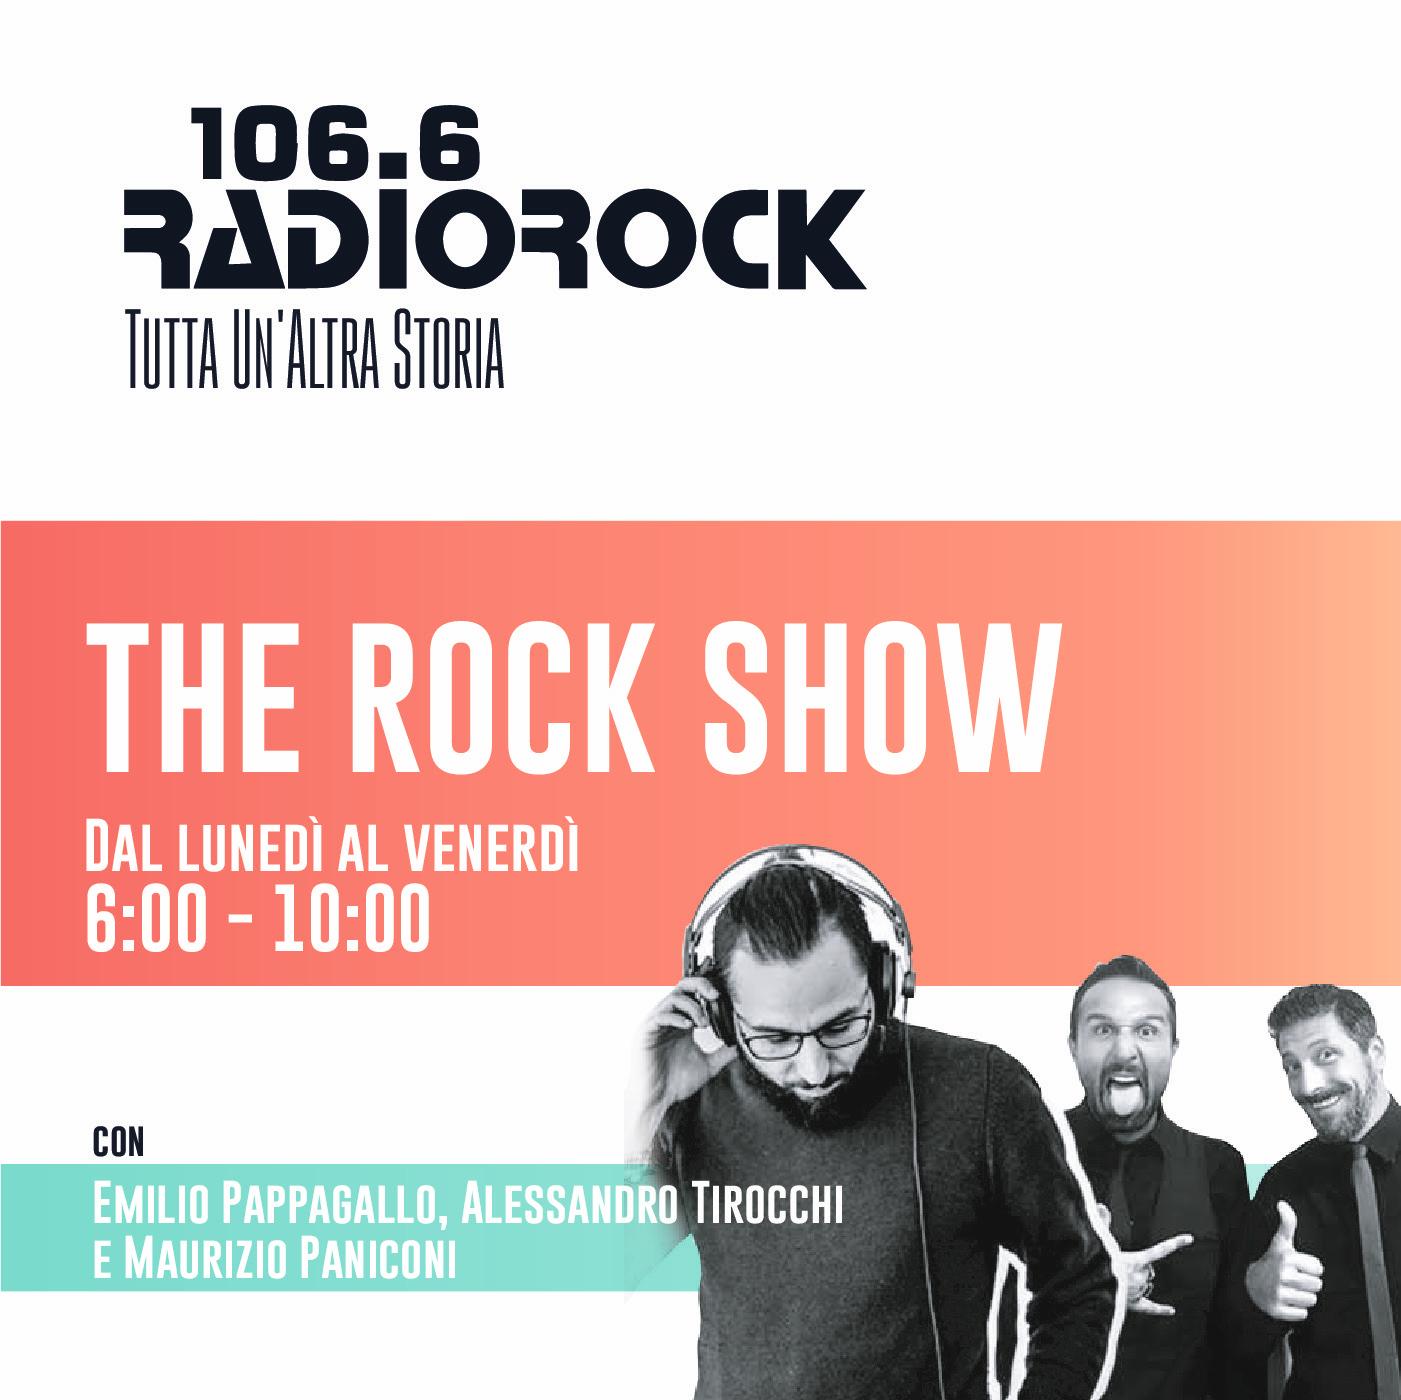 The Rock Show: Bentornato direttore (31-08-20)